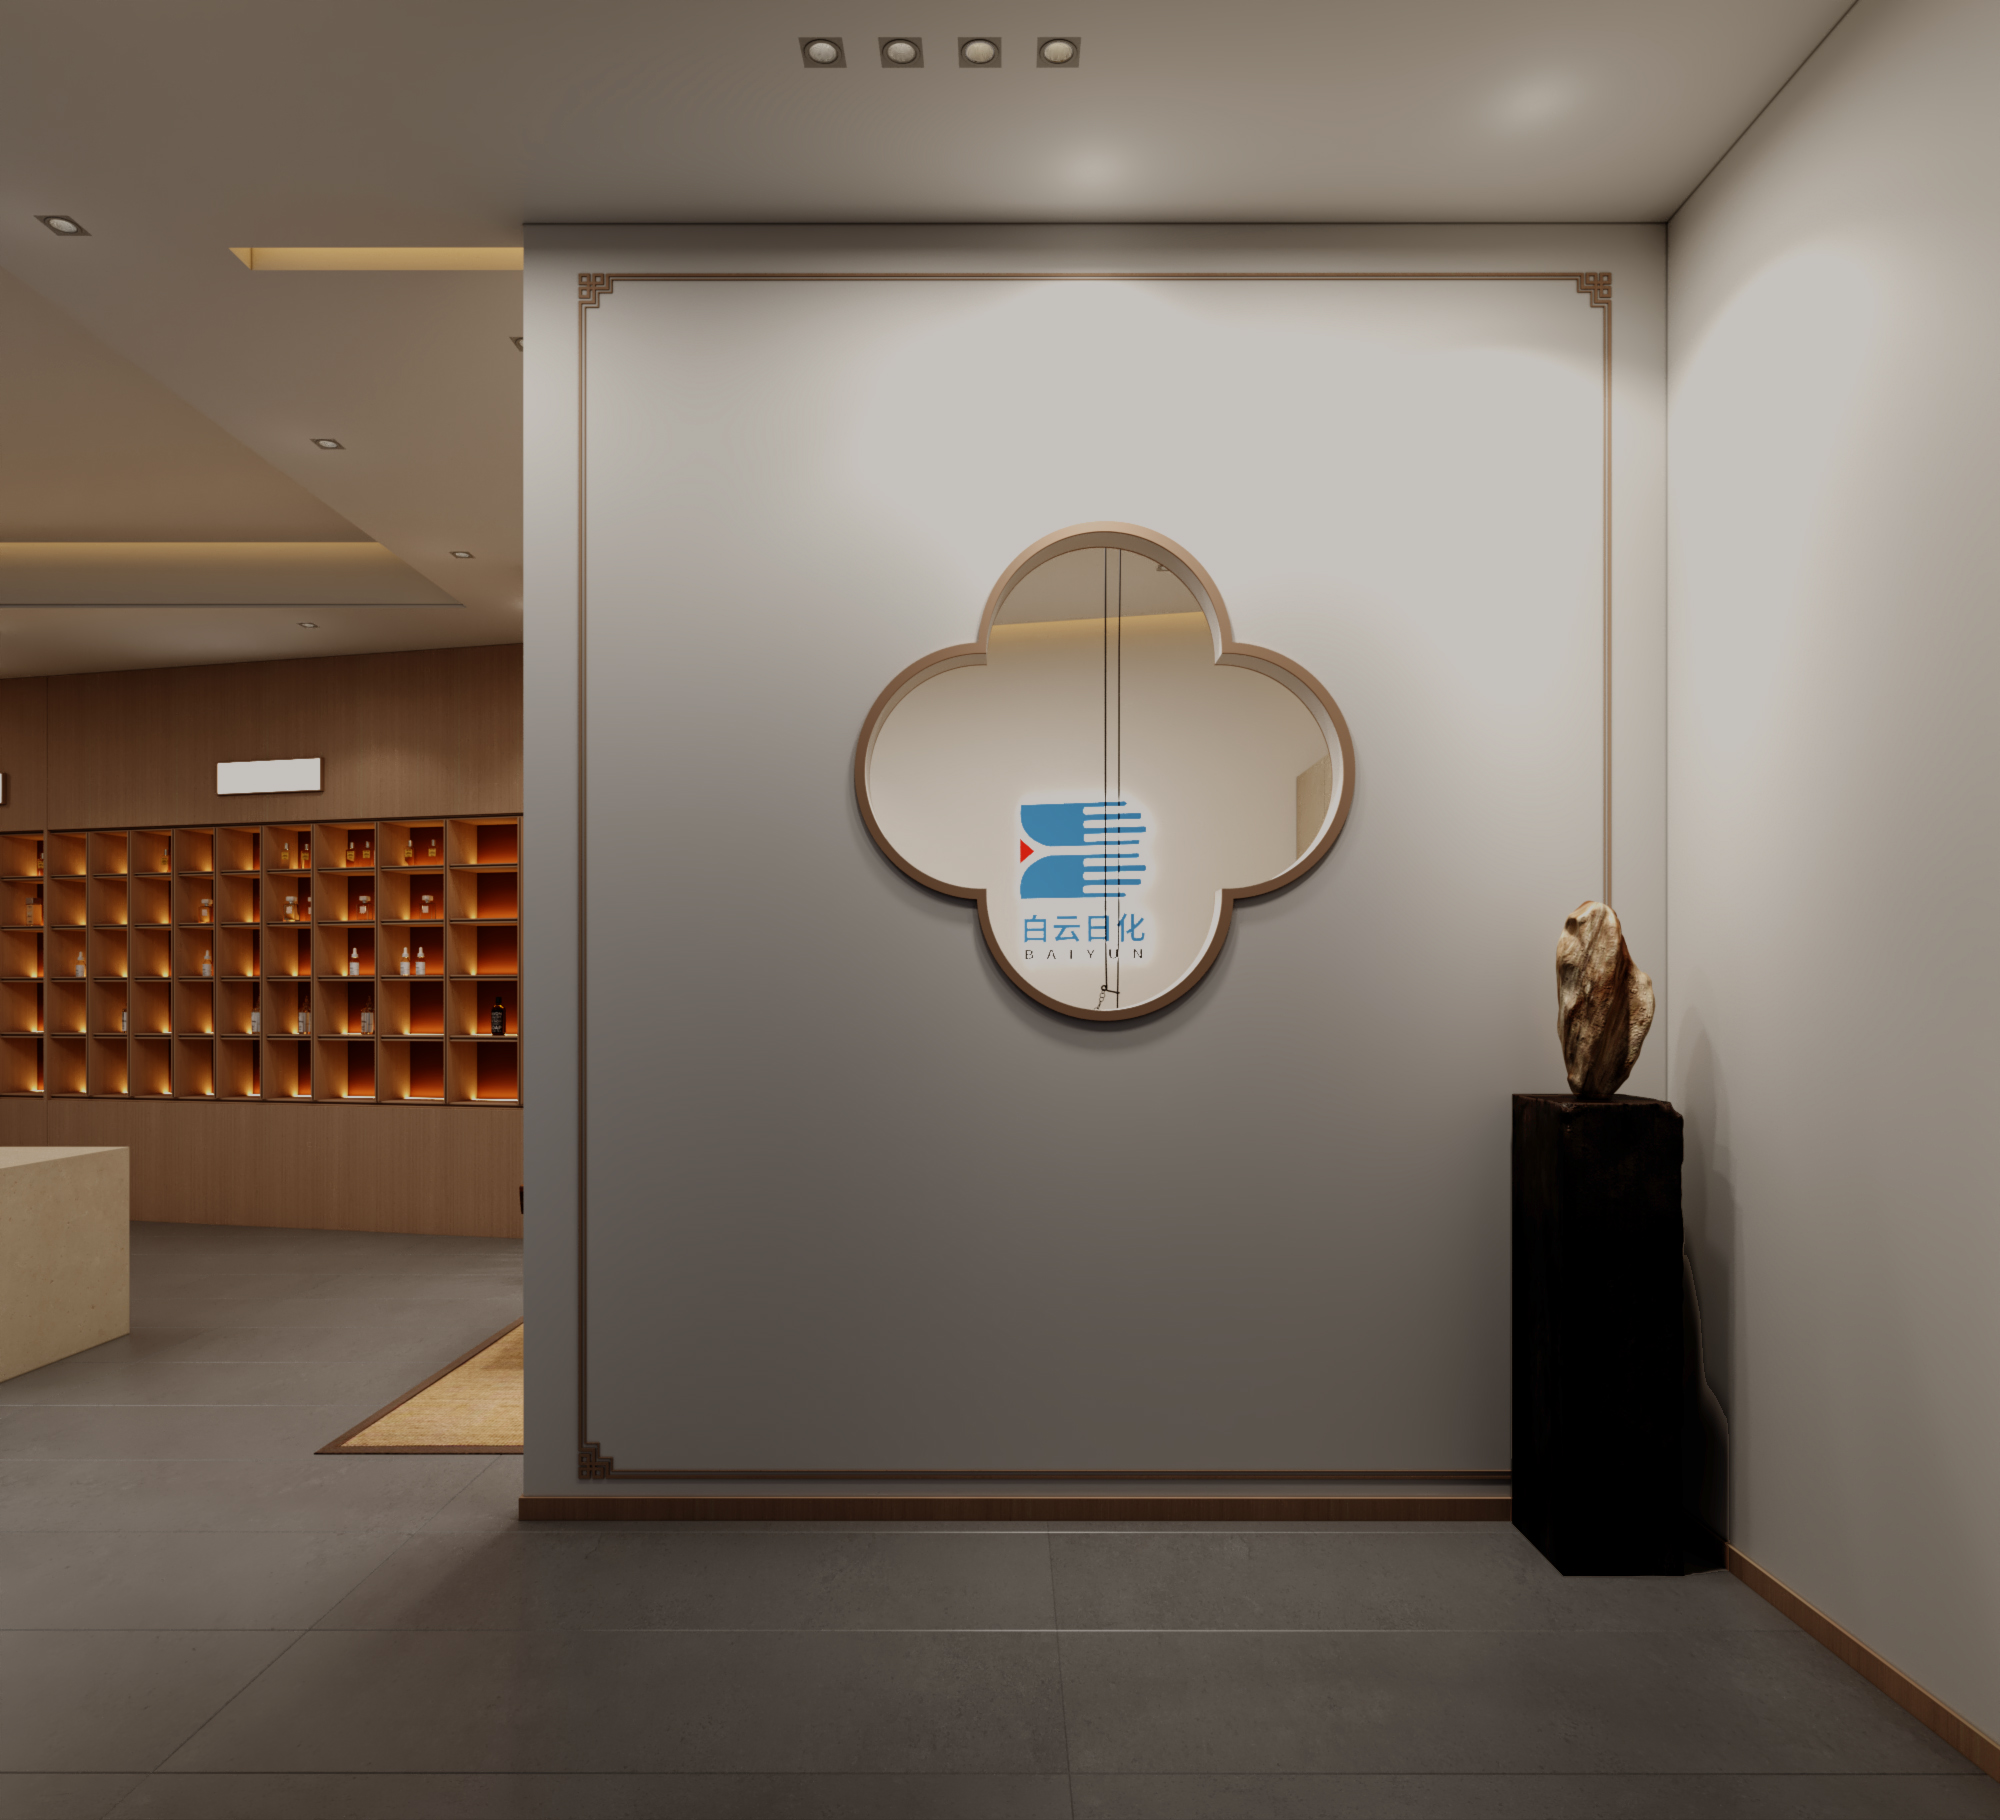 日化香精香料展厅设计公装效果图设计